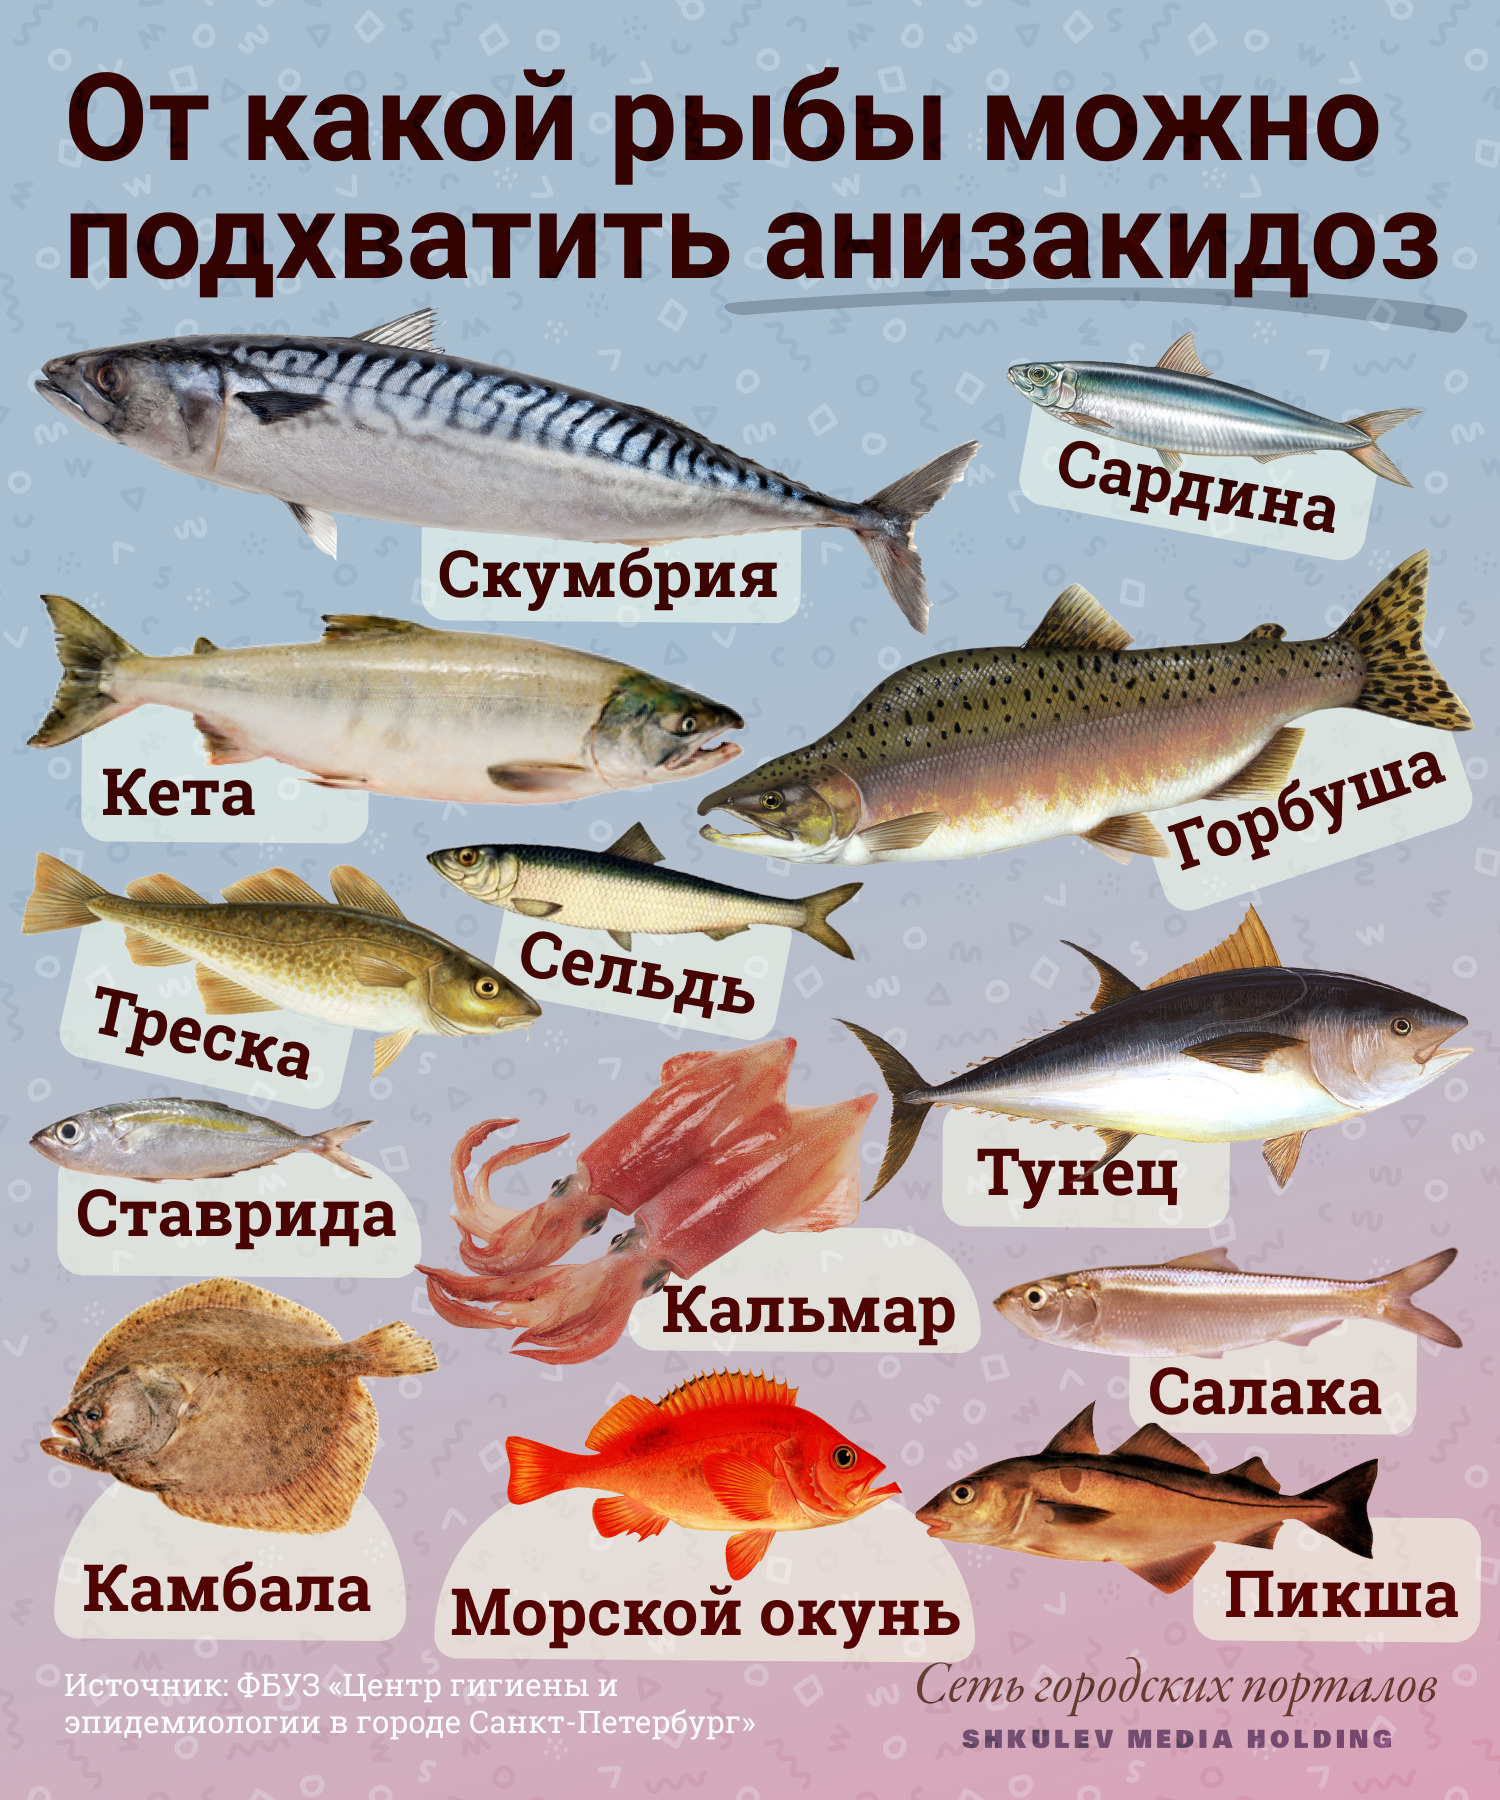 Интересные факты о лине (рыба)